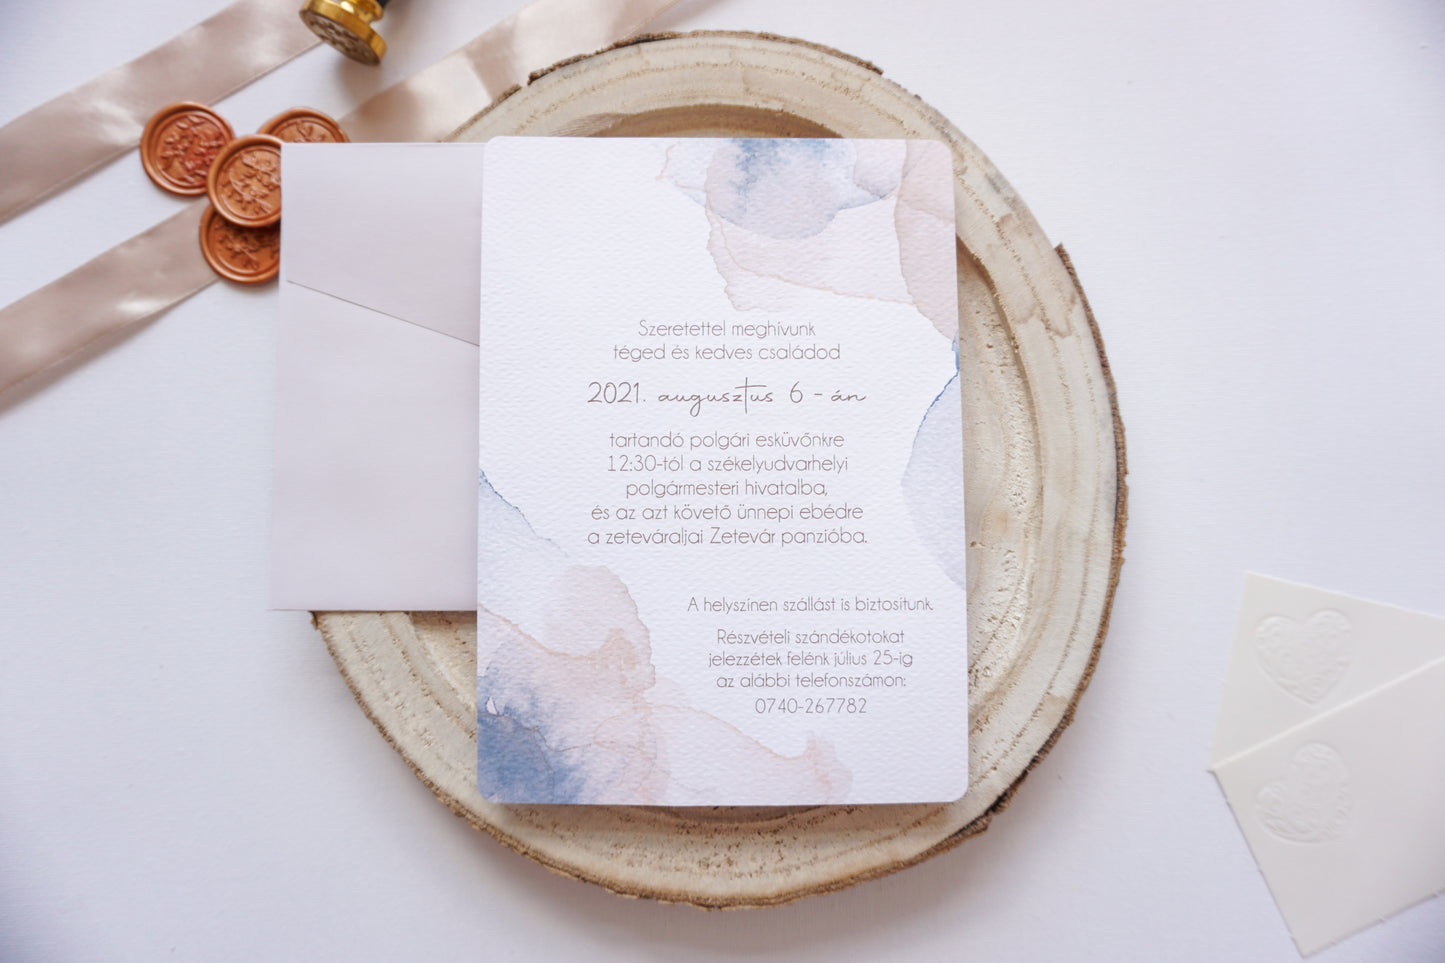 Esküvői meghívó EM06 - Két oldalas Akvarell hatású esküvői meghívó - Erdélyi Esküvői Meghívók - Wedding invitation EM06 - Két oldalas Akvarell hatású esküvői meghívó - invitatii de nunta EM06 - Két oldalas Akvarell hatású esküvői meghívó